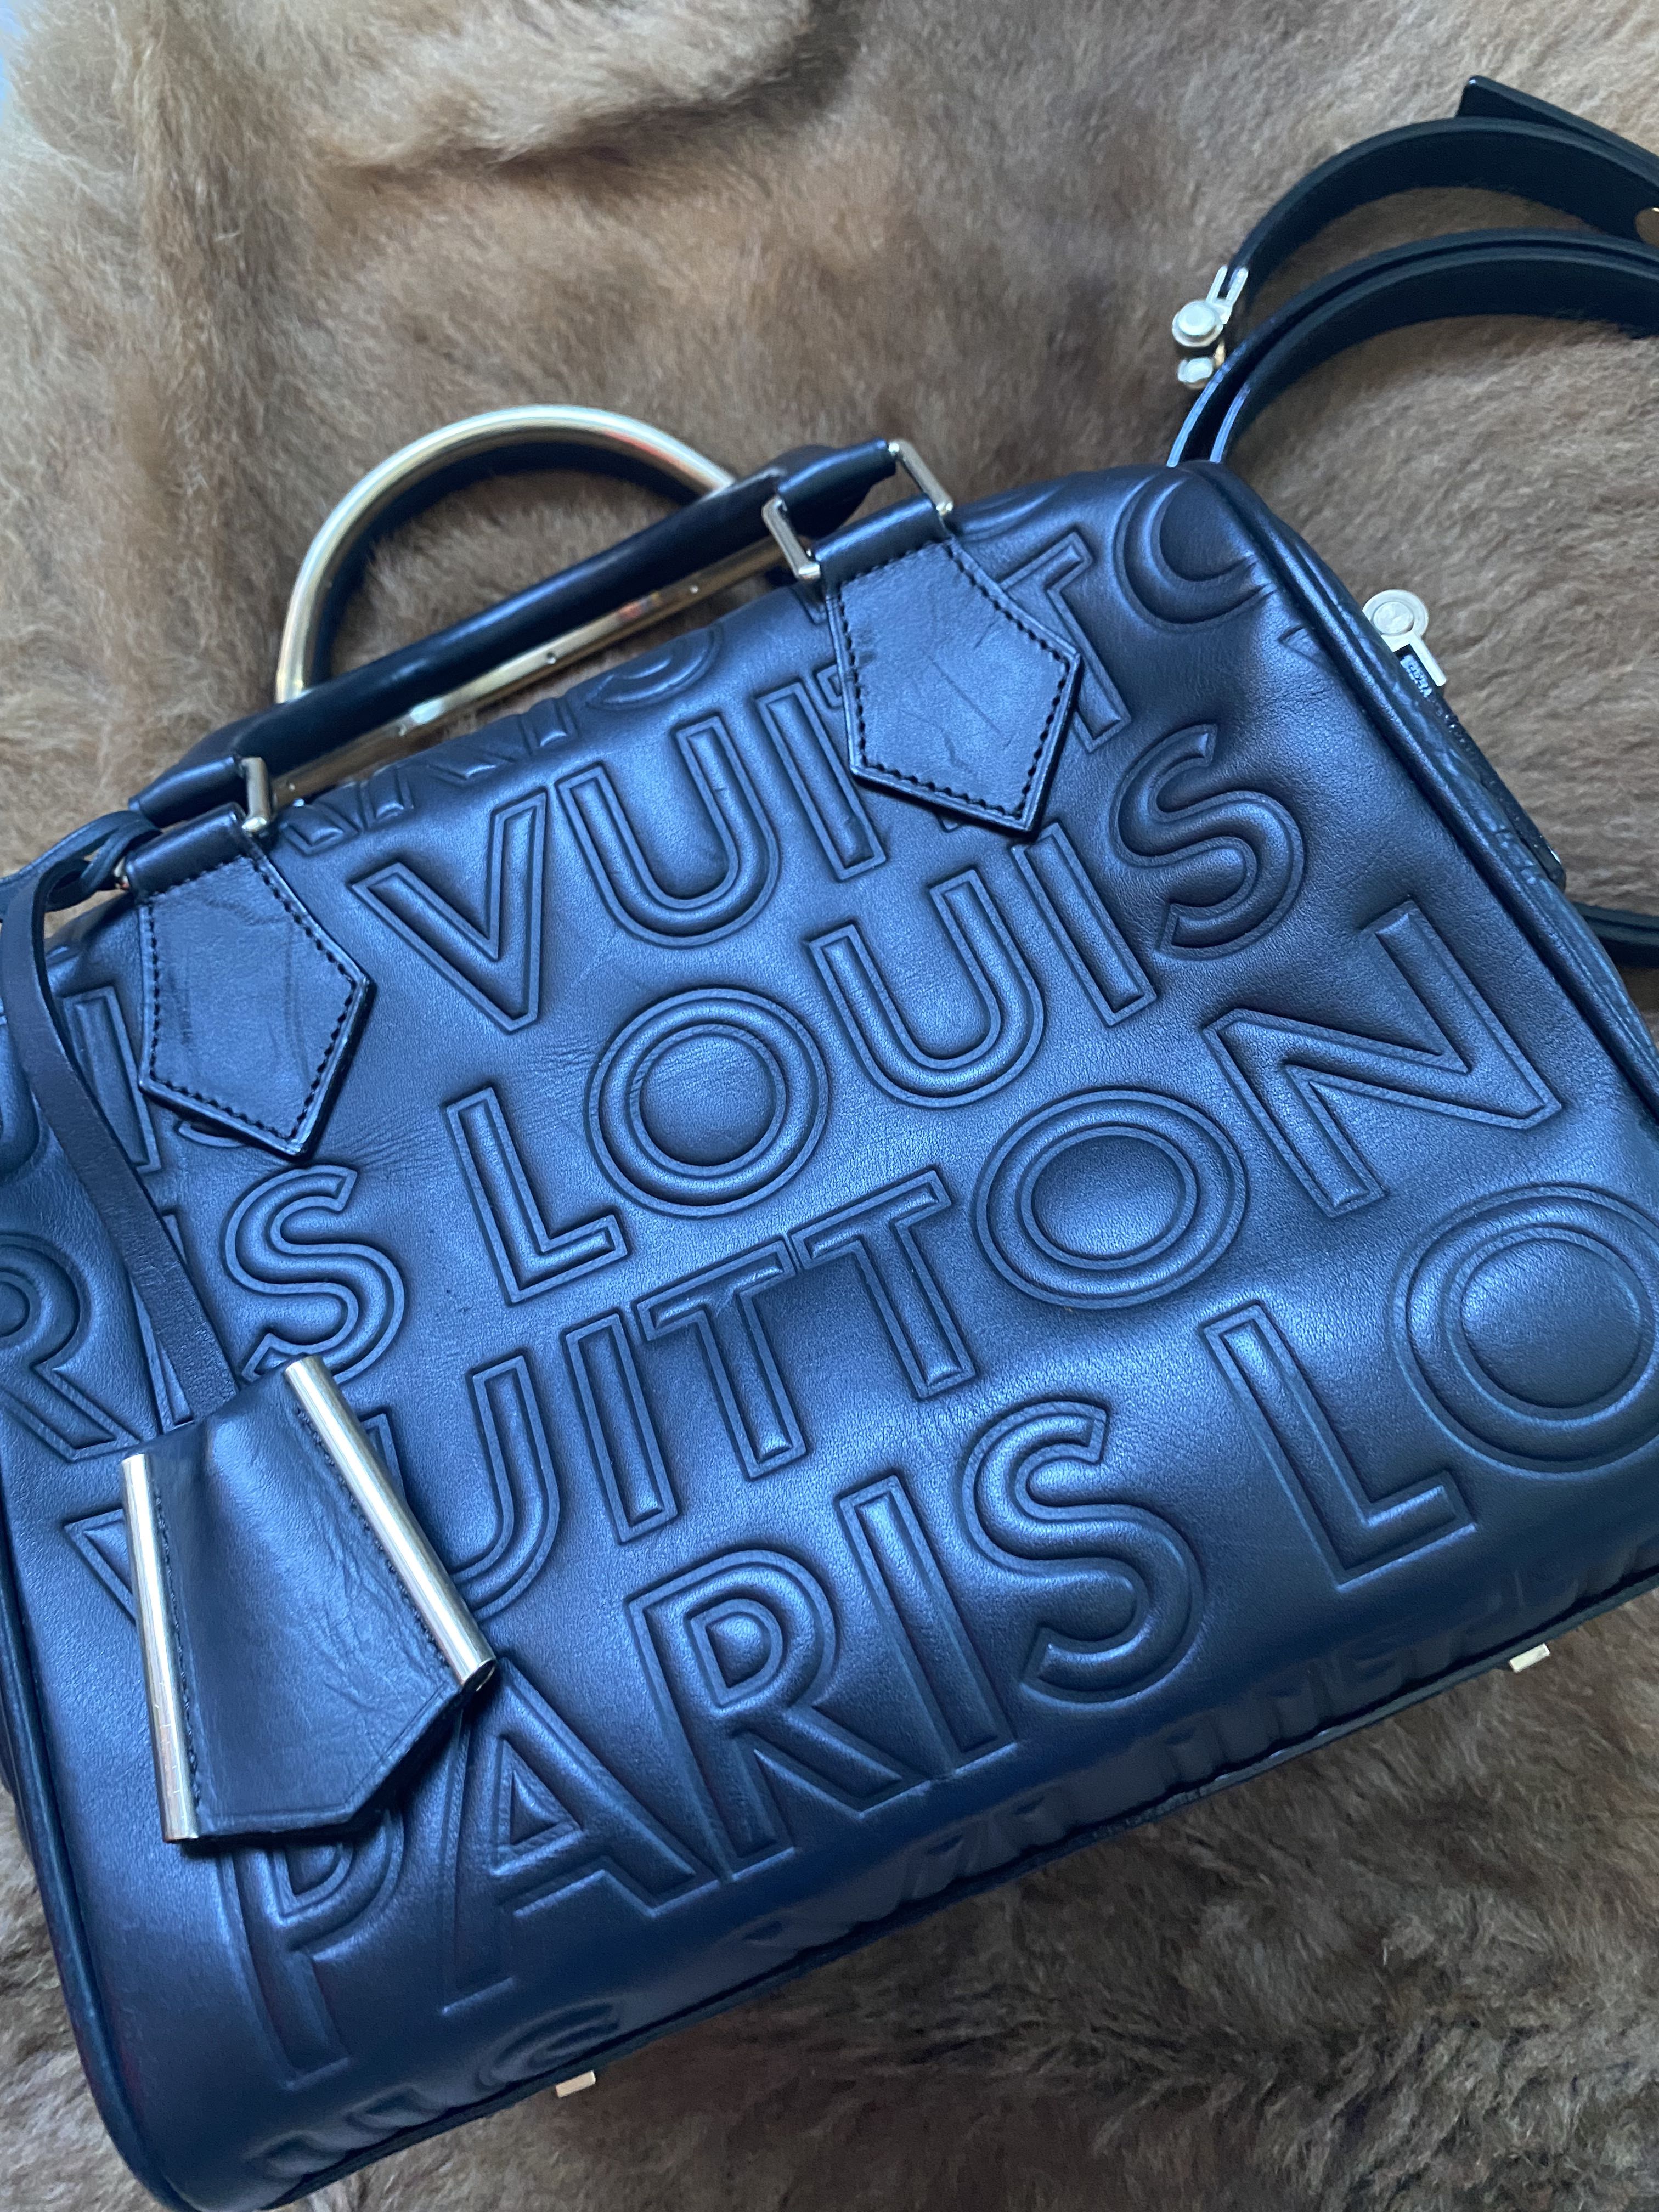 Louis Vuitton Automne-hiver 2008 Bag Priceline